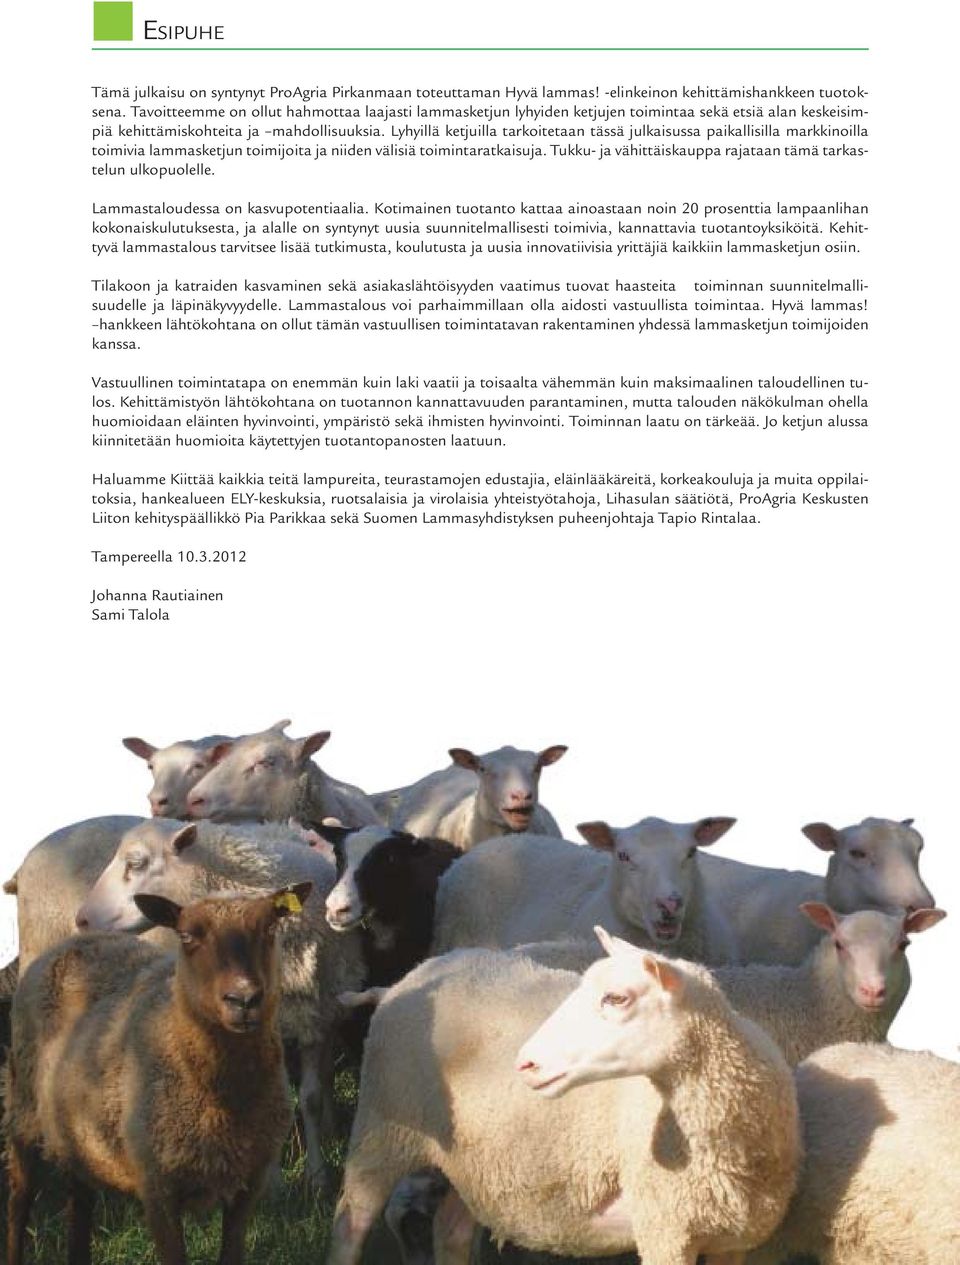 Lyhyillä ketjuilla tarkoitetaan tässä julkaisussa paikallisilla markkinoilla toimivia lammasketjun toimijoita ja niiden välisiä toimintaratkaisuja.